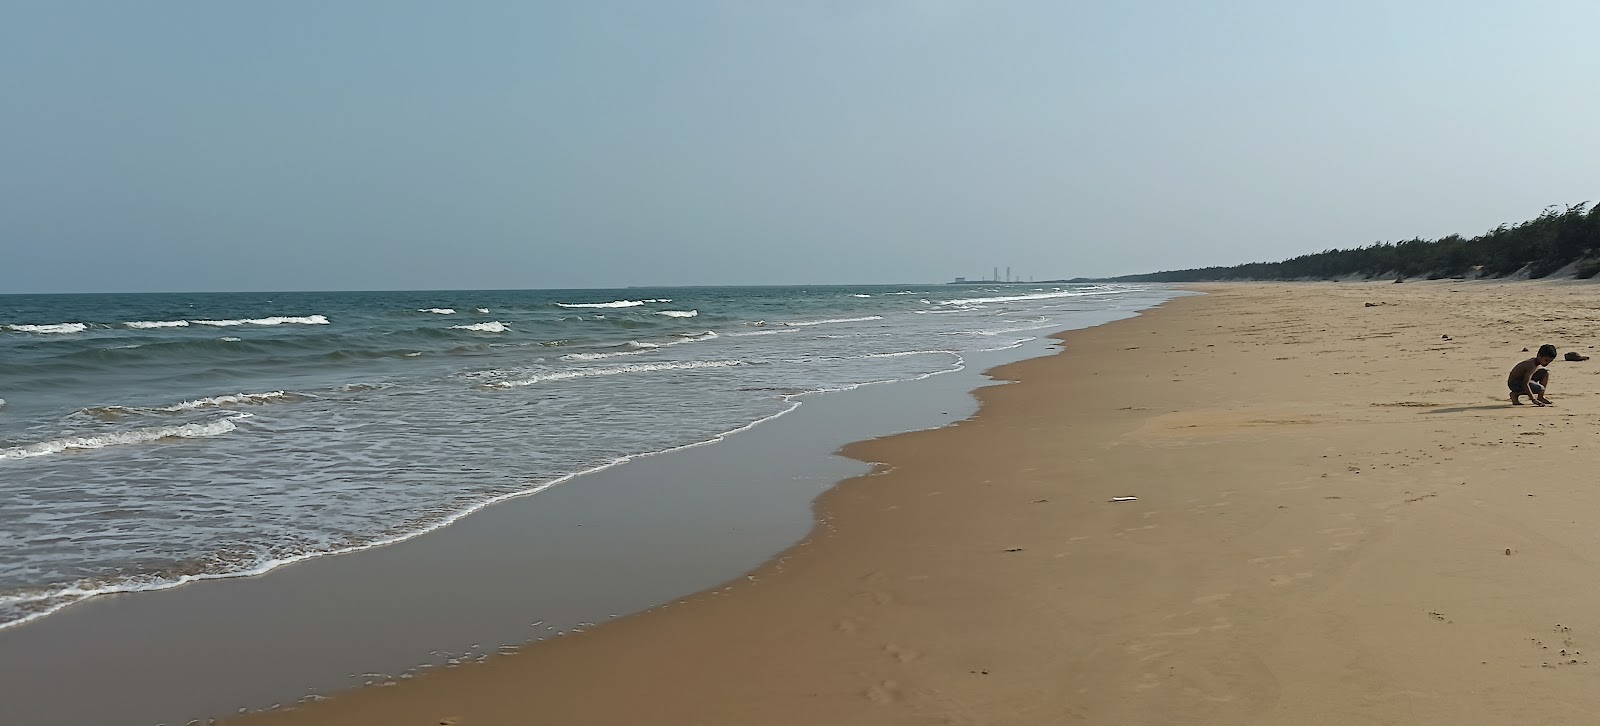 Krishnapatnam Beach'in fotoğrafı düz ve uzun ile birlikte